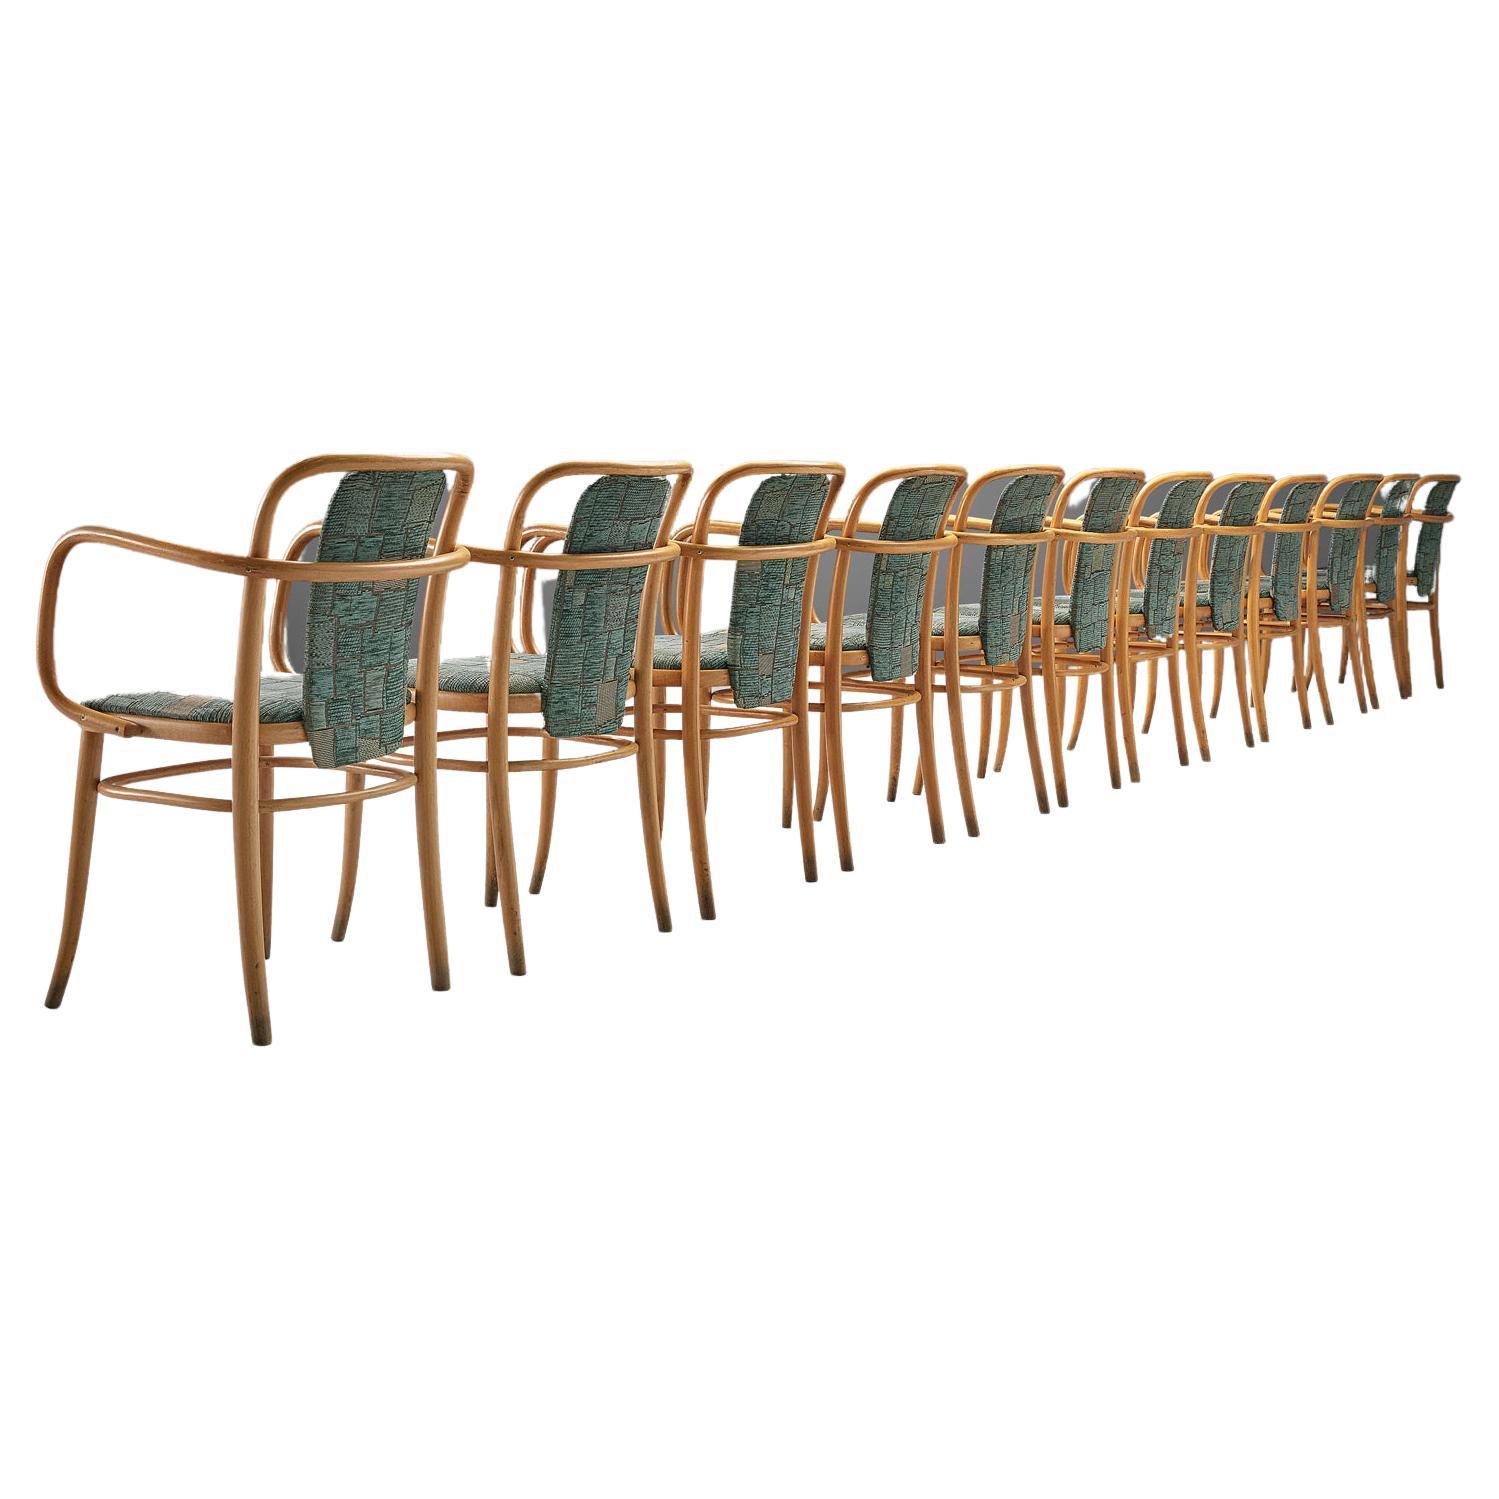 Grand ensemble de douze fauteuils en bois courbé tapissés de vert